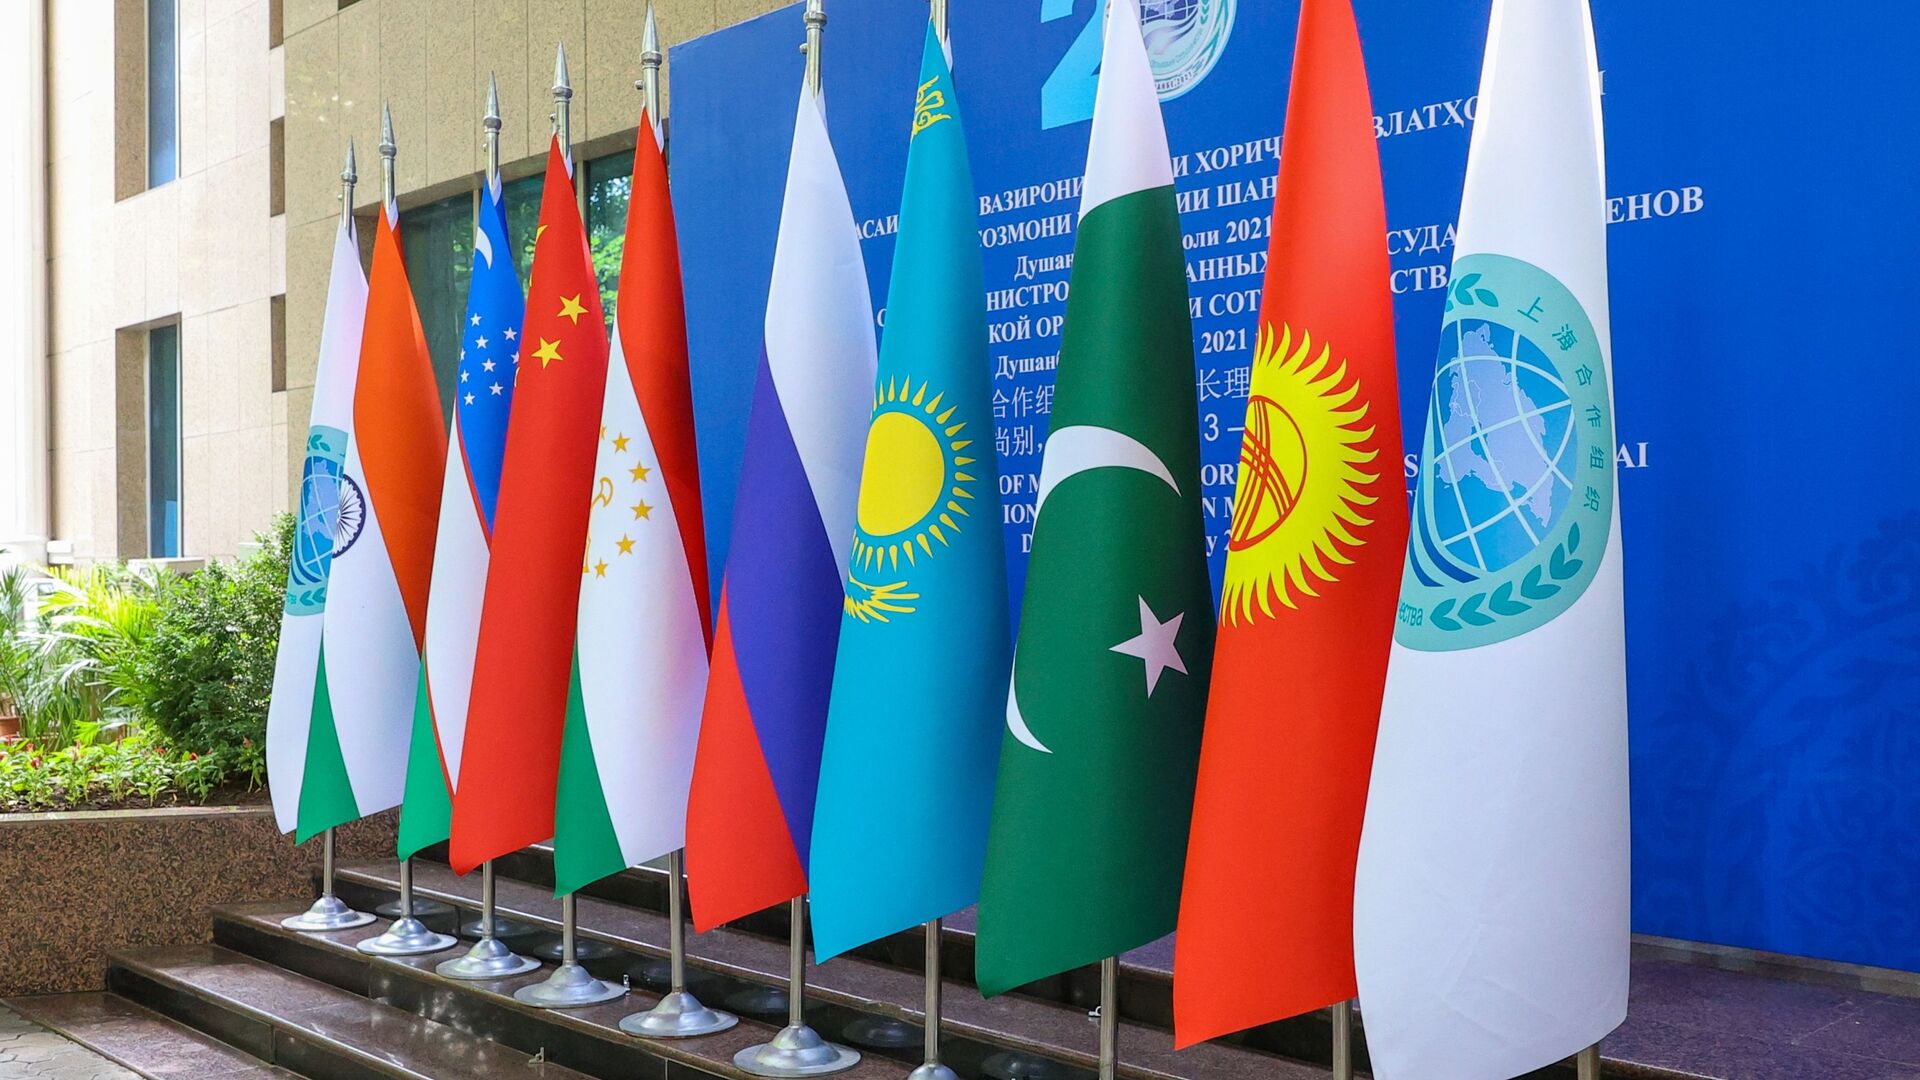 Заседание Совета министров иностранных дел государств - членов ШОС - Sputnik Азербайджан, 1920, 14.07.2021